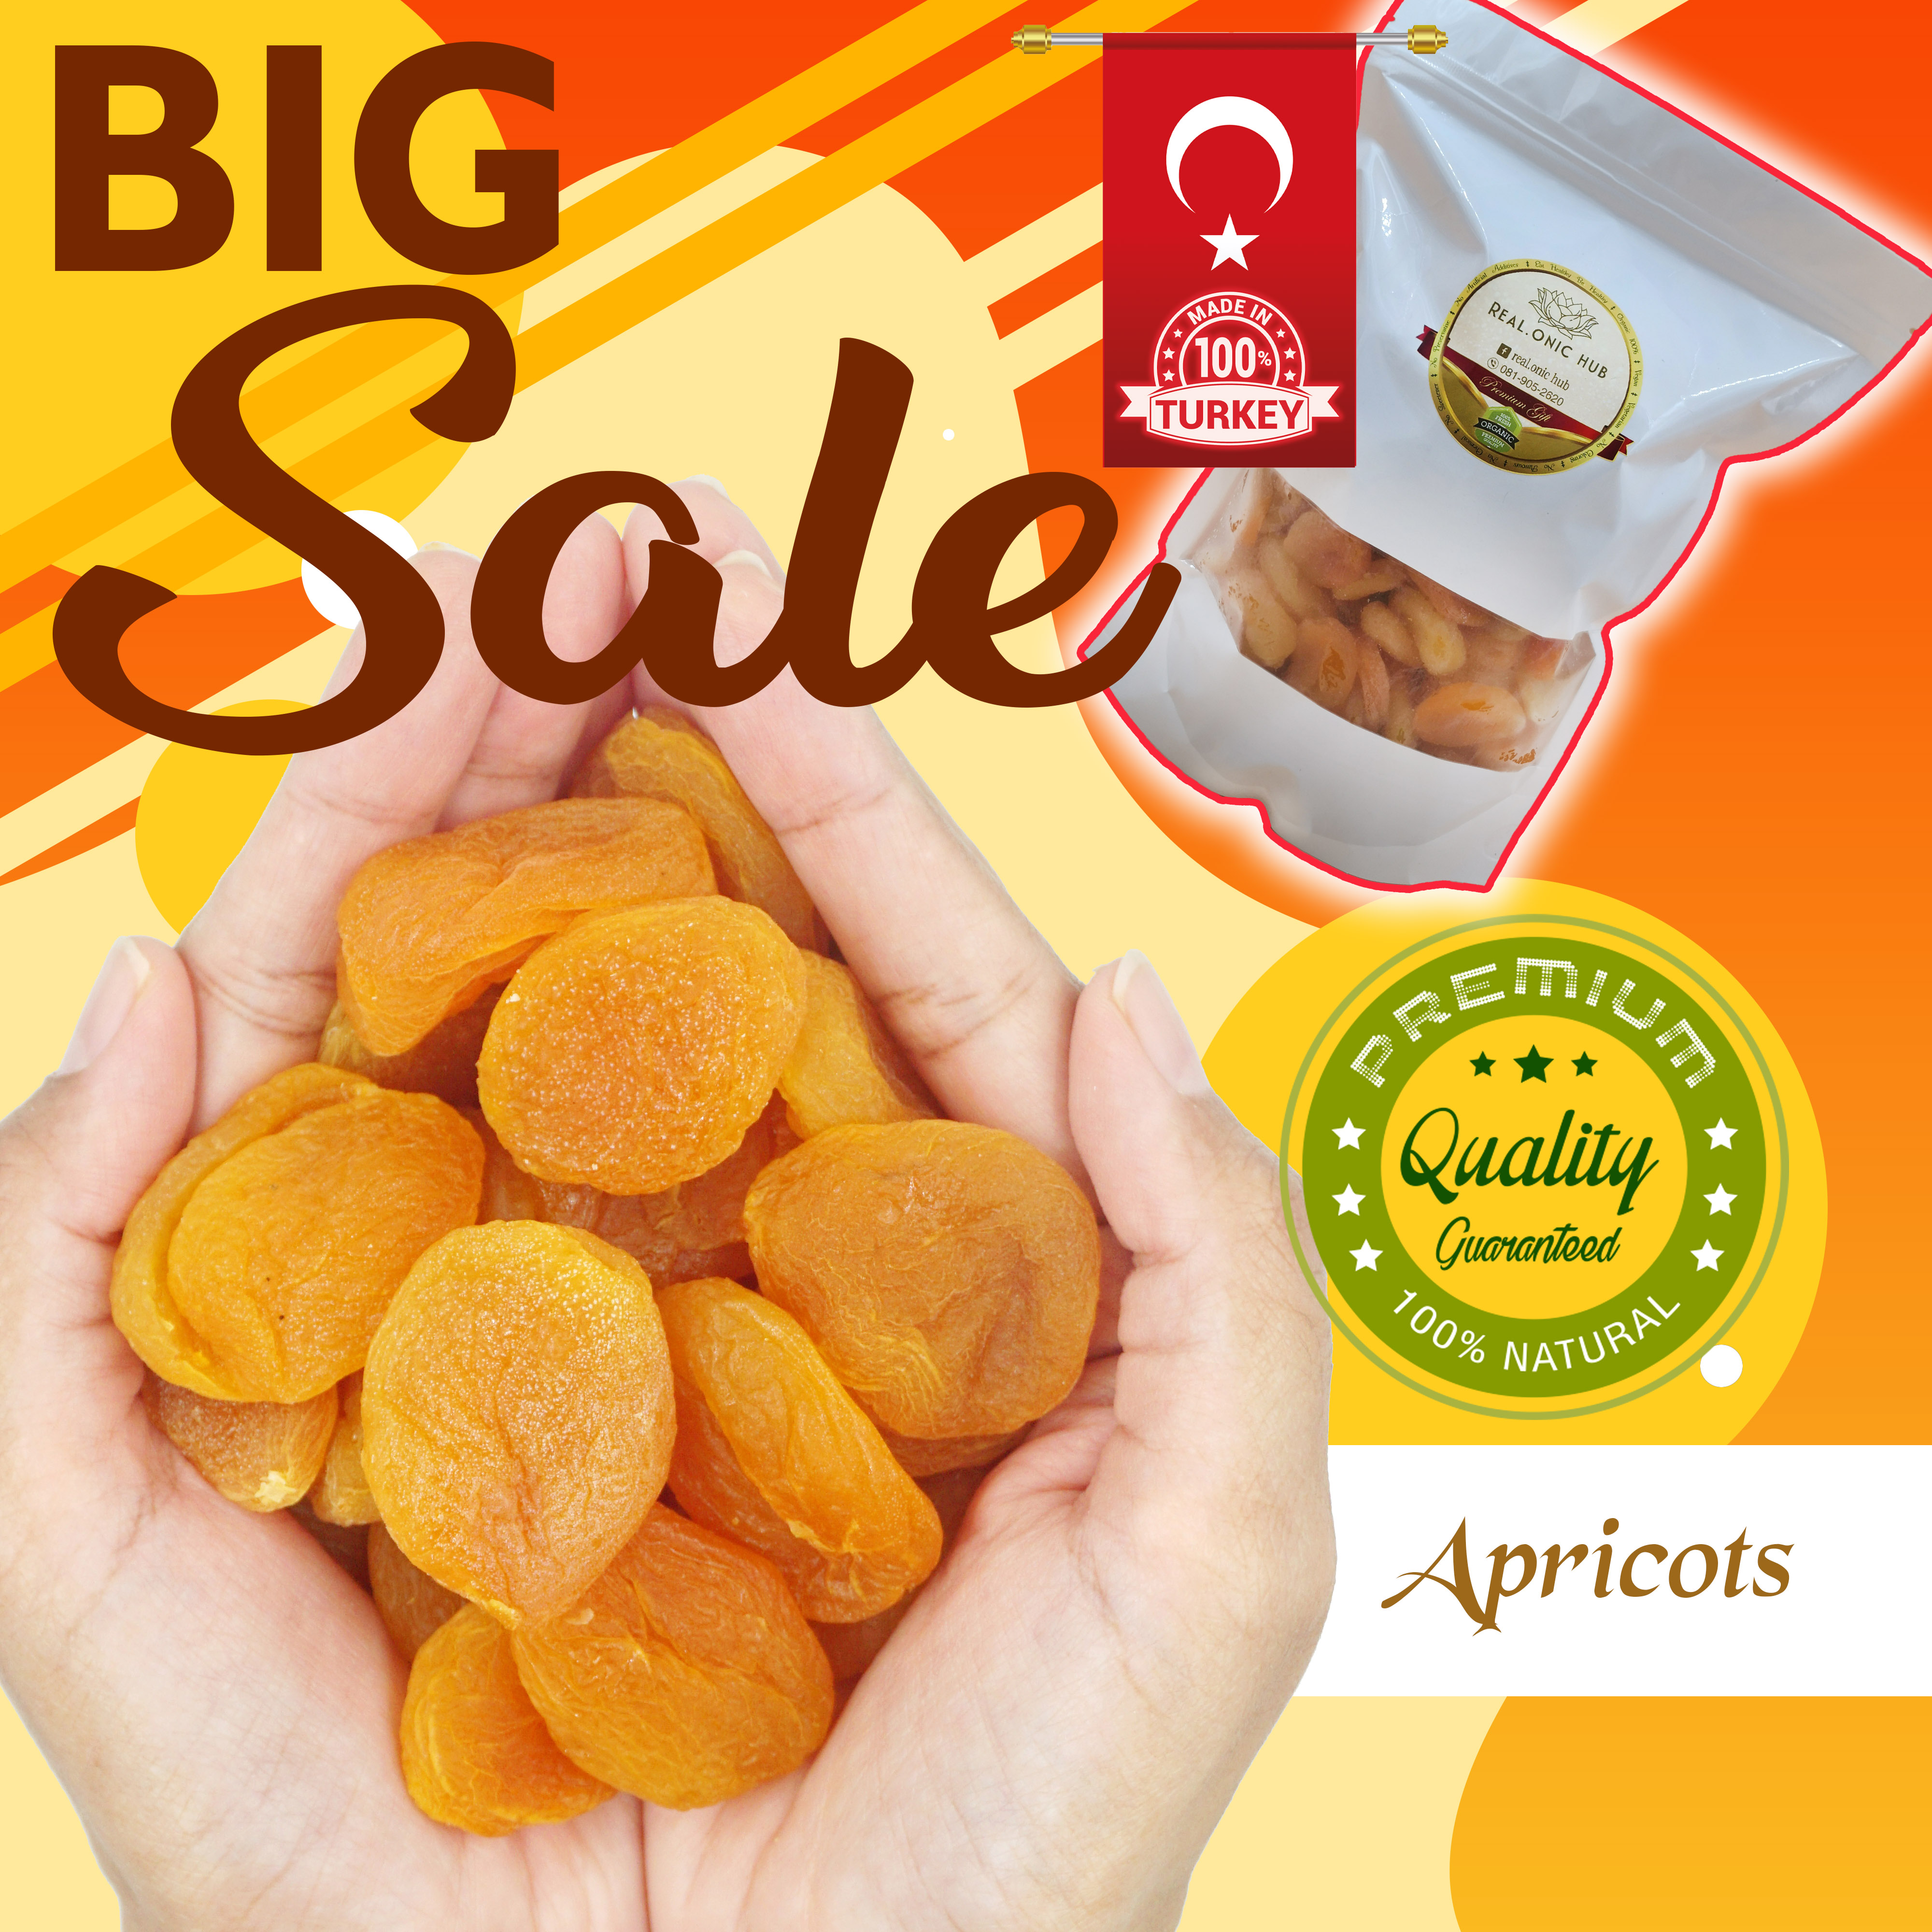 ขายส่ง😍 ถุงซิป / Zip Bag 1 Kg. 💖 Exp.31-04-2023 💝 แอปริคอต / Premium Dried Apricot 💝 จาก Turkey 💝 ผลไม้อบแห้ง 💝 Natural 100% 💝 Sugar Free